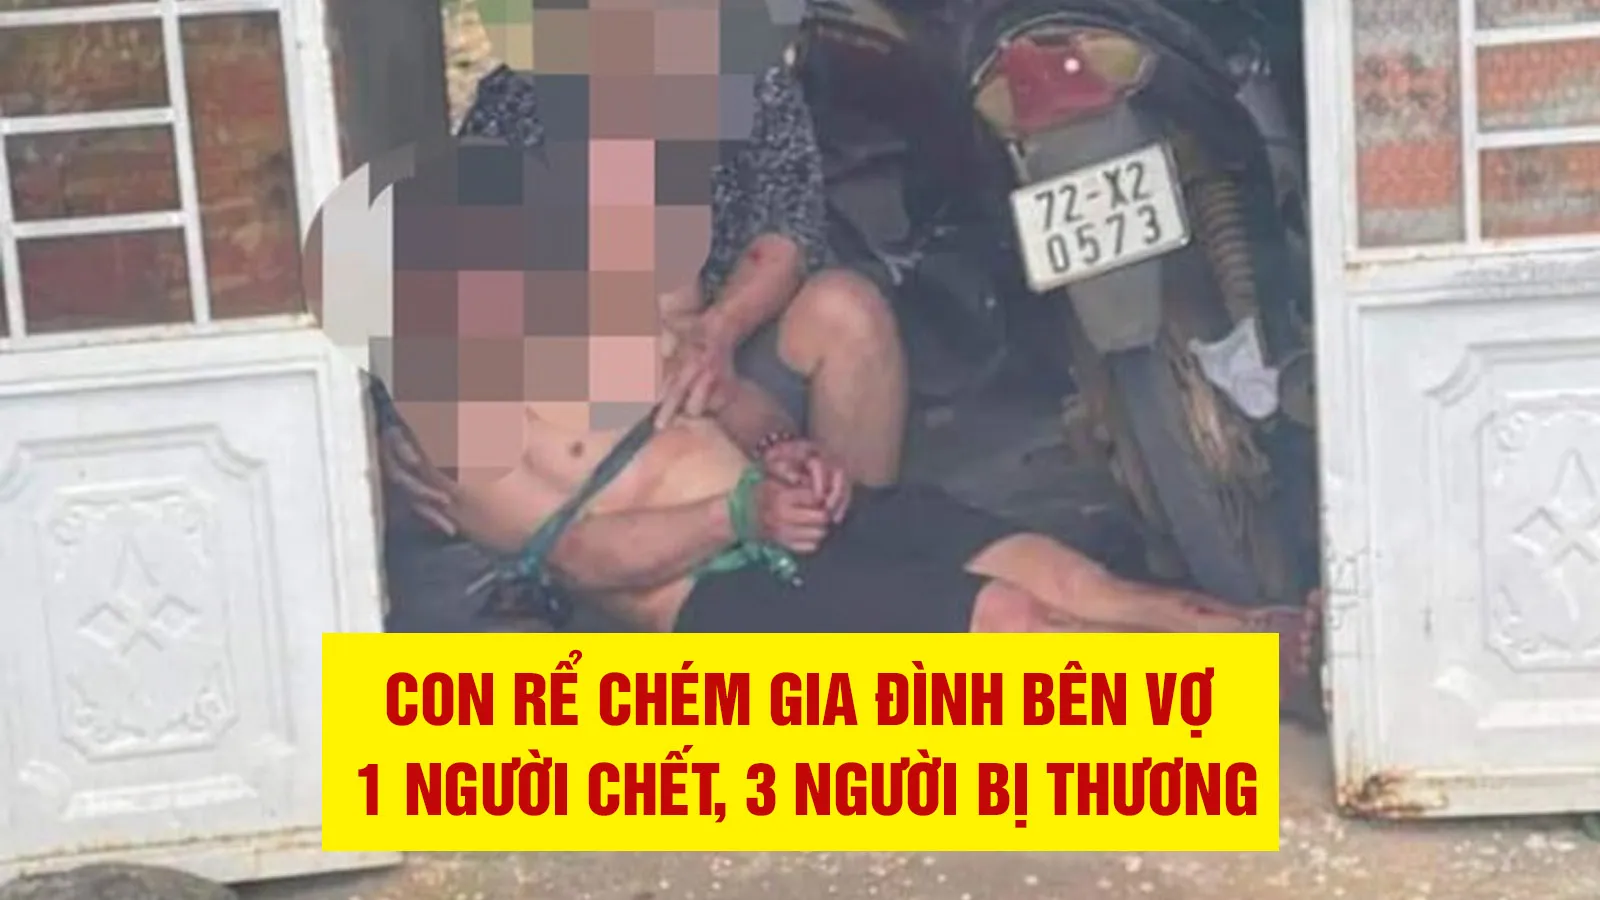 Án mạng ở Bà Rịa - Vũng Tàu: Con rể truy sát gia đình vợ, 1 người chết, 3 người bị thương